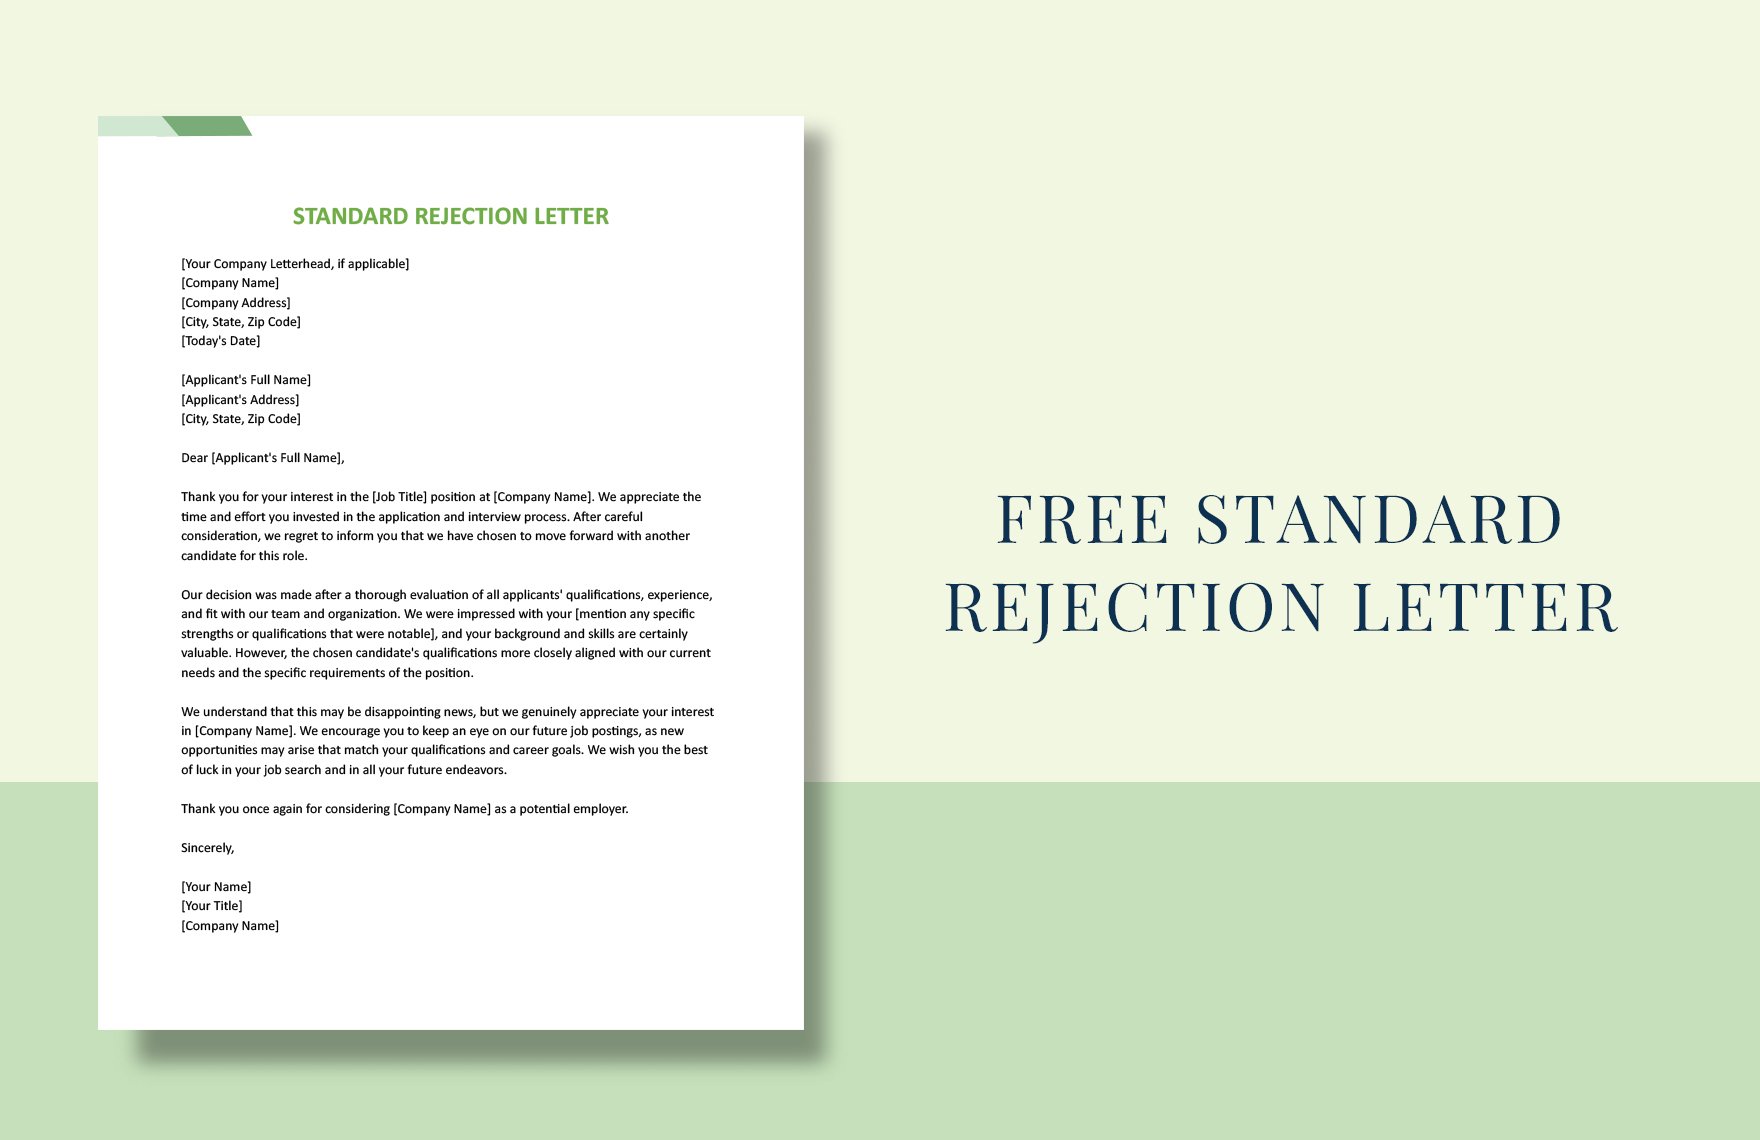 Standard Rejection Letter